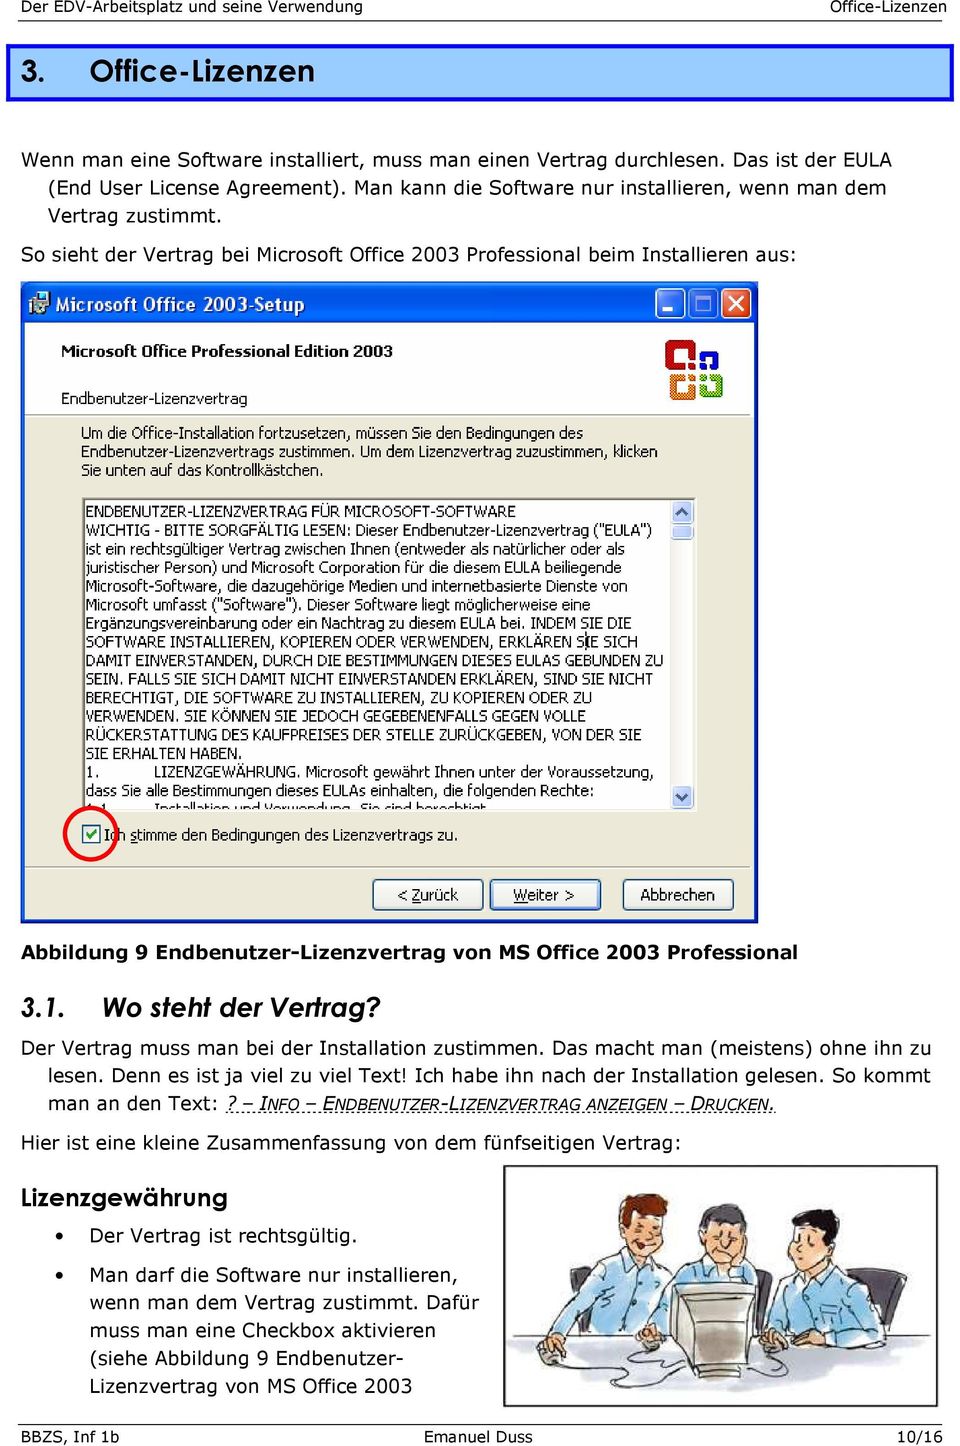 So sieht der Vertrag bei Microsoft Office 2003 Professional beim Installieren aus: Abbildung 9 Endbenutzer-Lizenzvertrag von MS Office 2003 Professional 3.1. Wo steht der Vertrag?